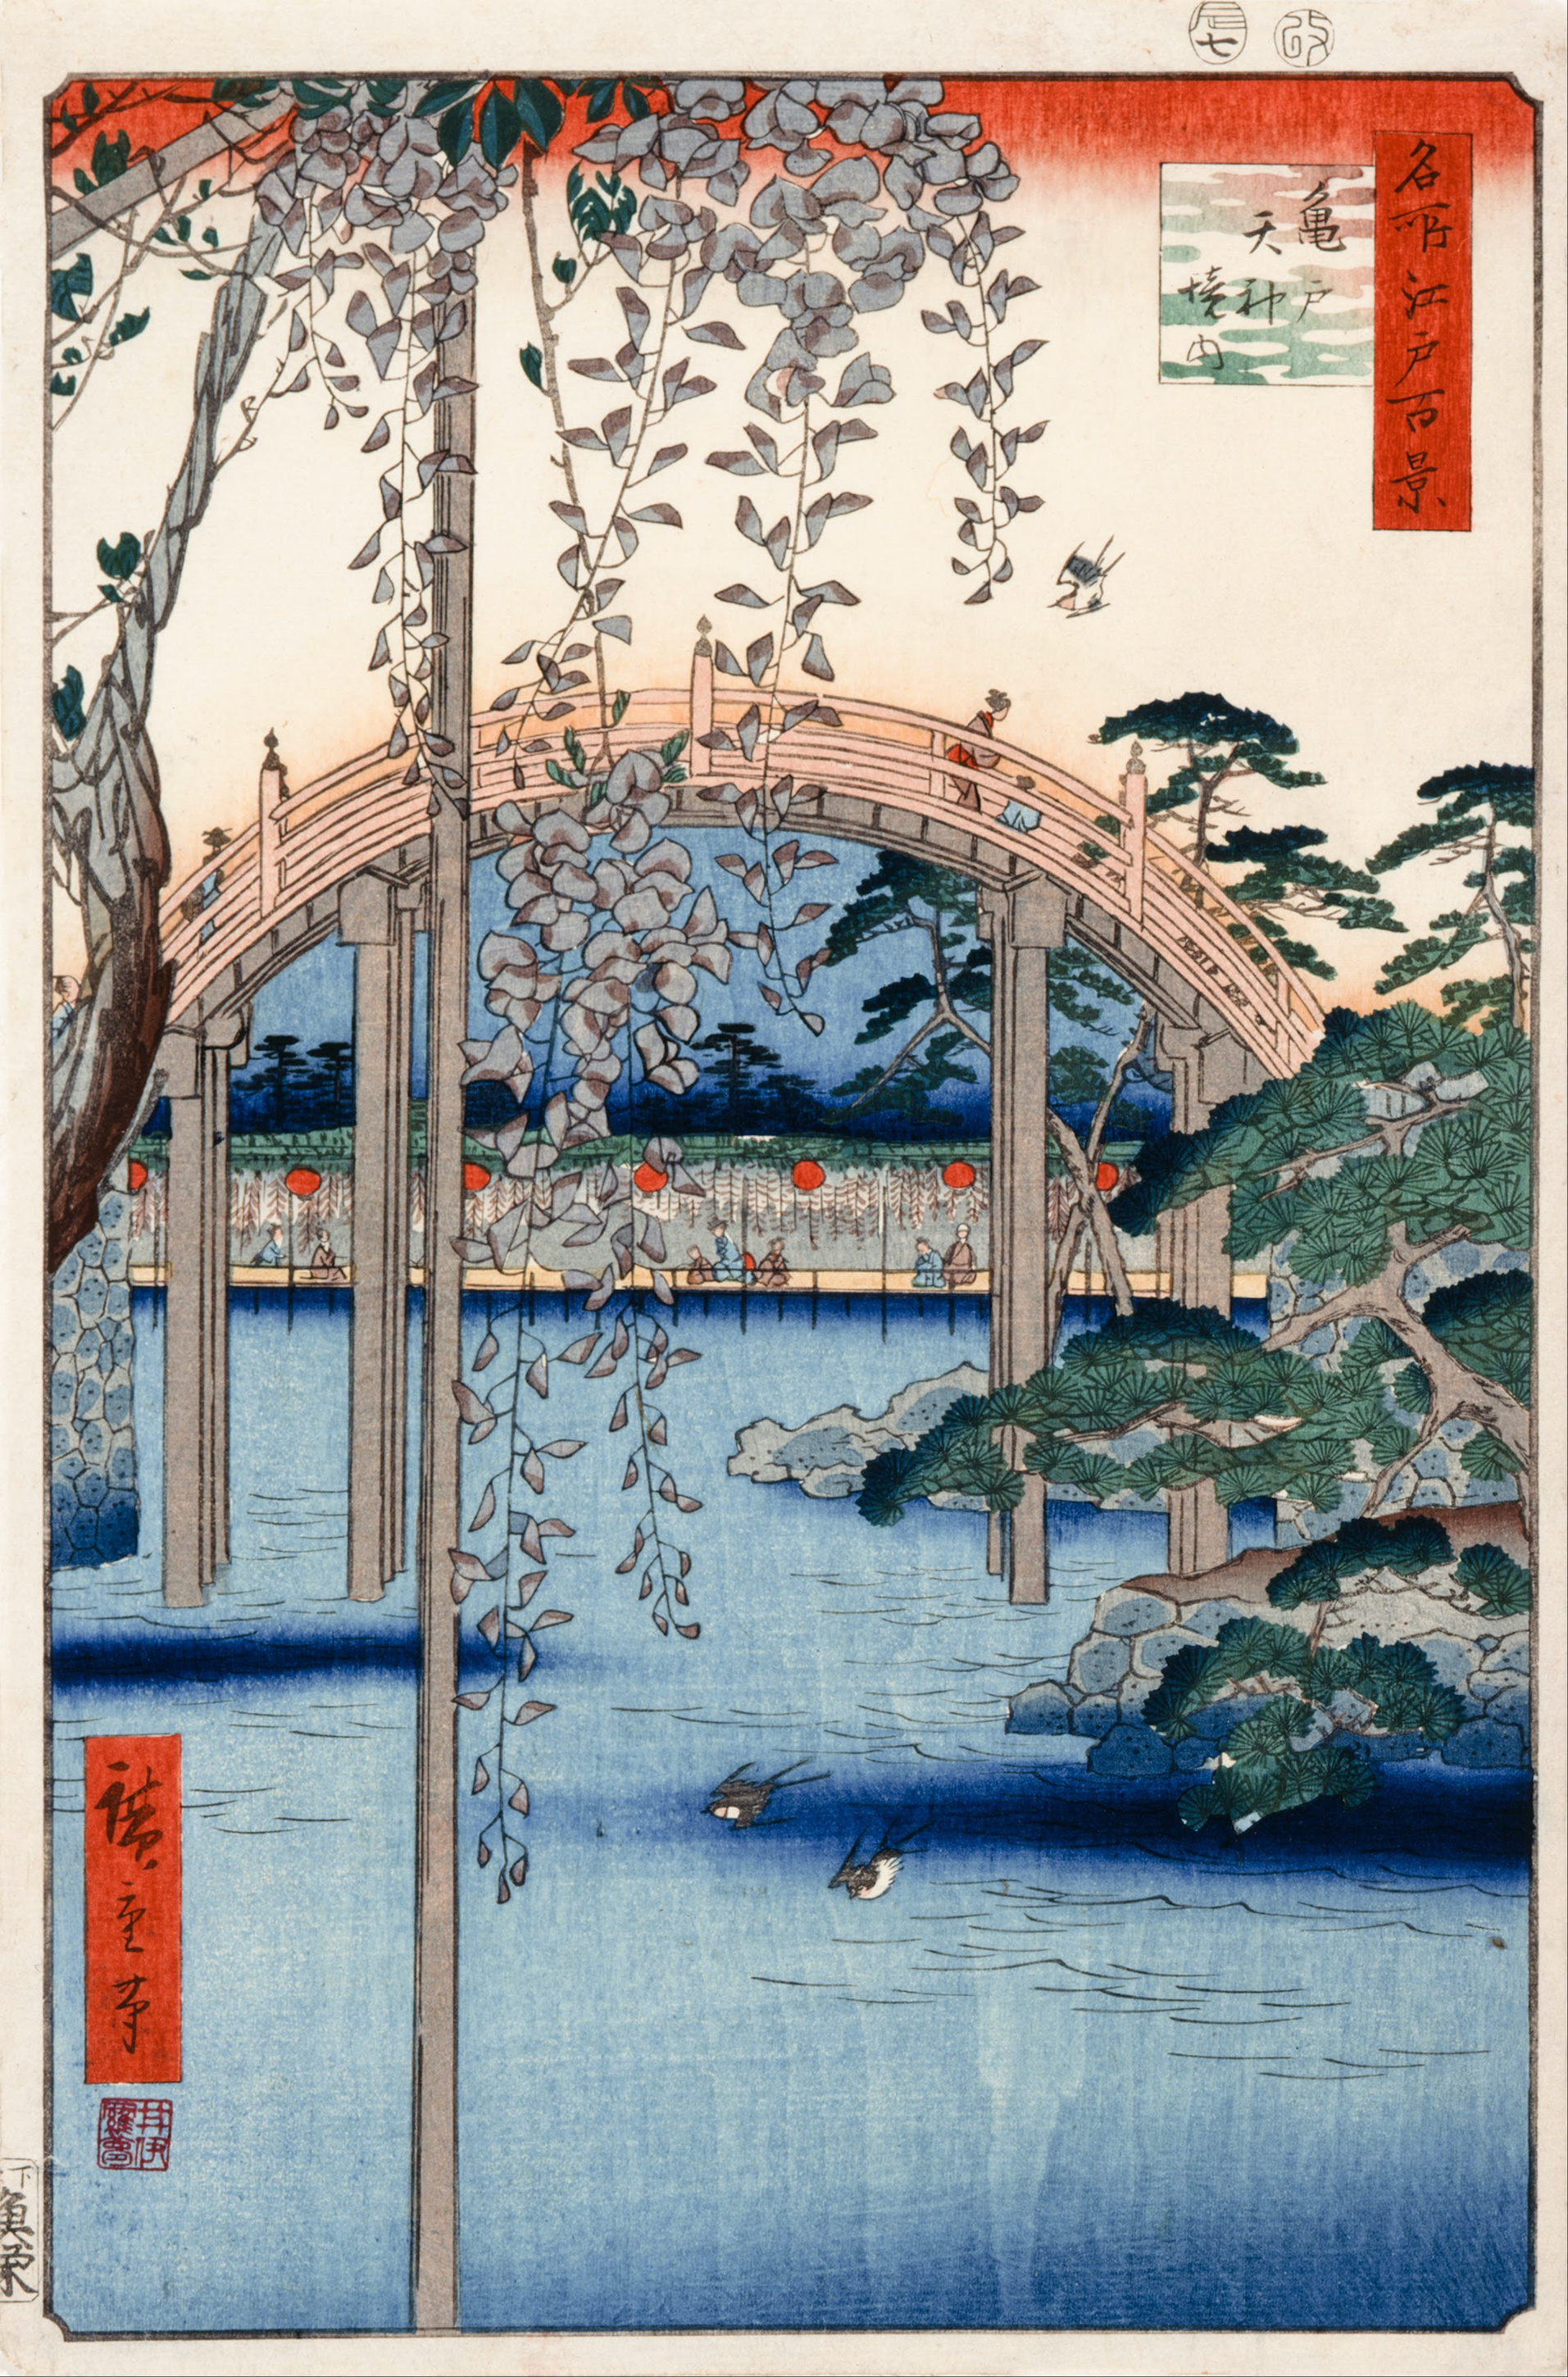 Nr. 57, Auf dem Gelände des Kameido-Tenjin-Schreins by  Hiroshige - 1856 - 34 x 22,9 cm Cincinnati Art Museum